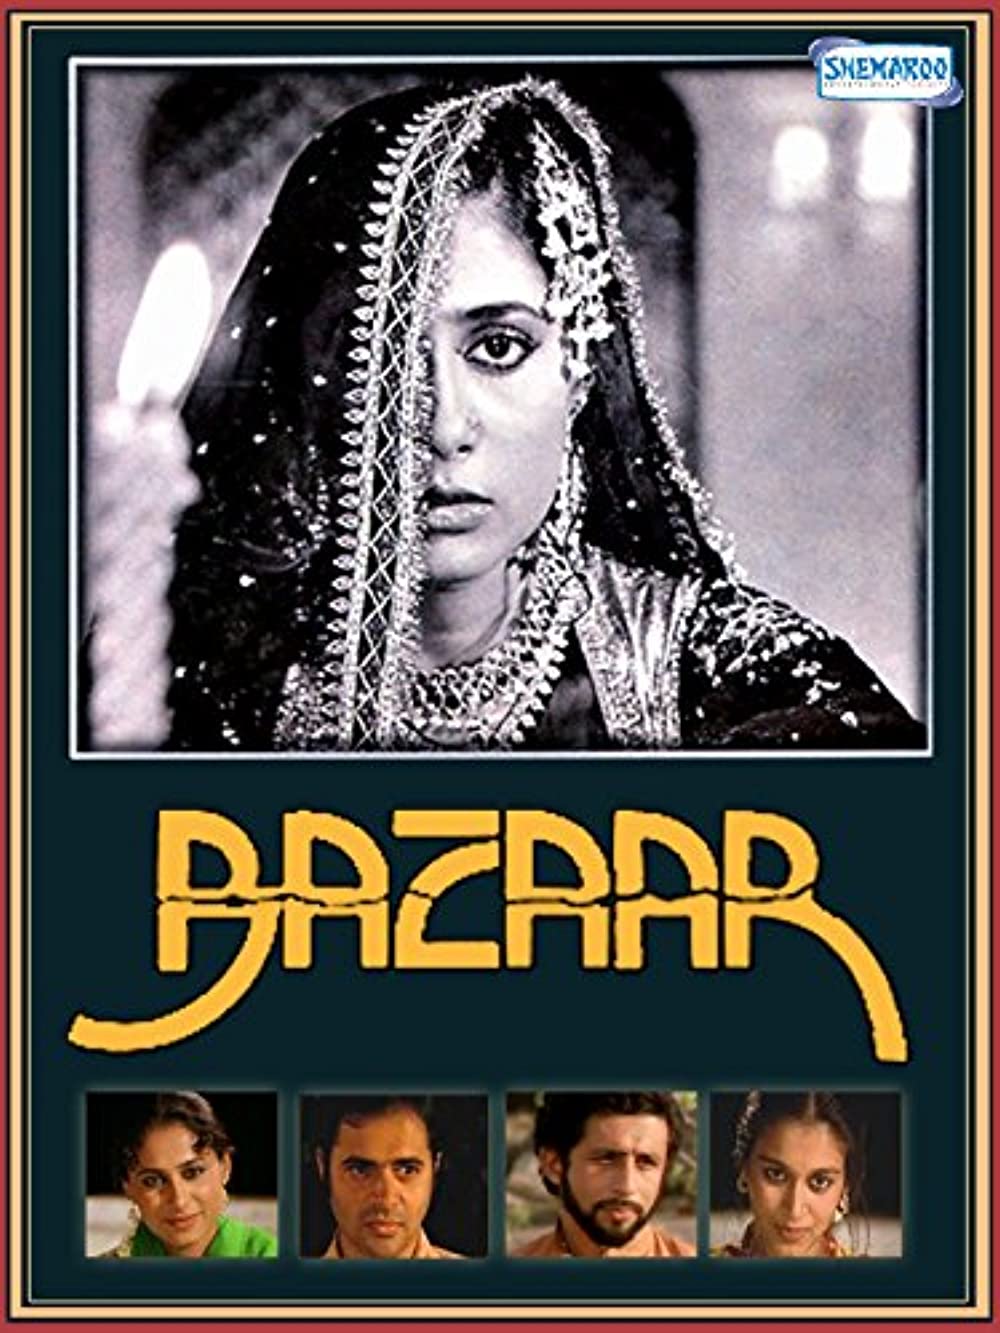 Bazaar 1982 18550 Poster.jpg